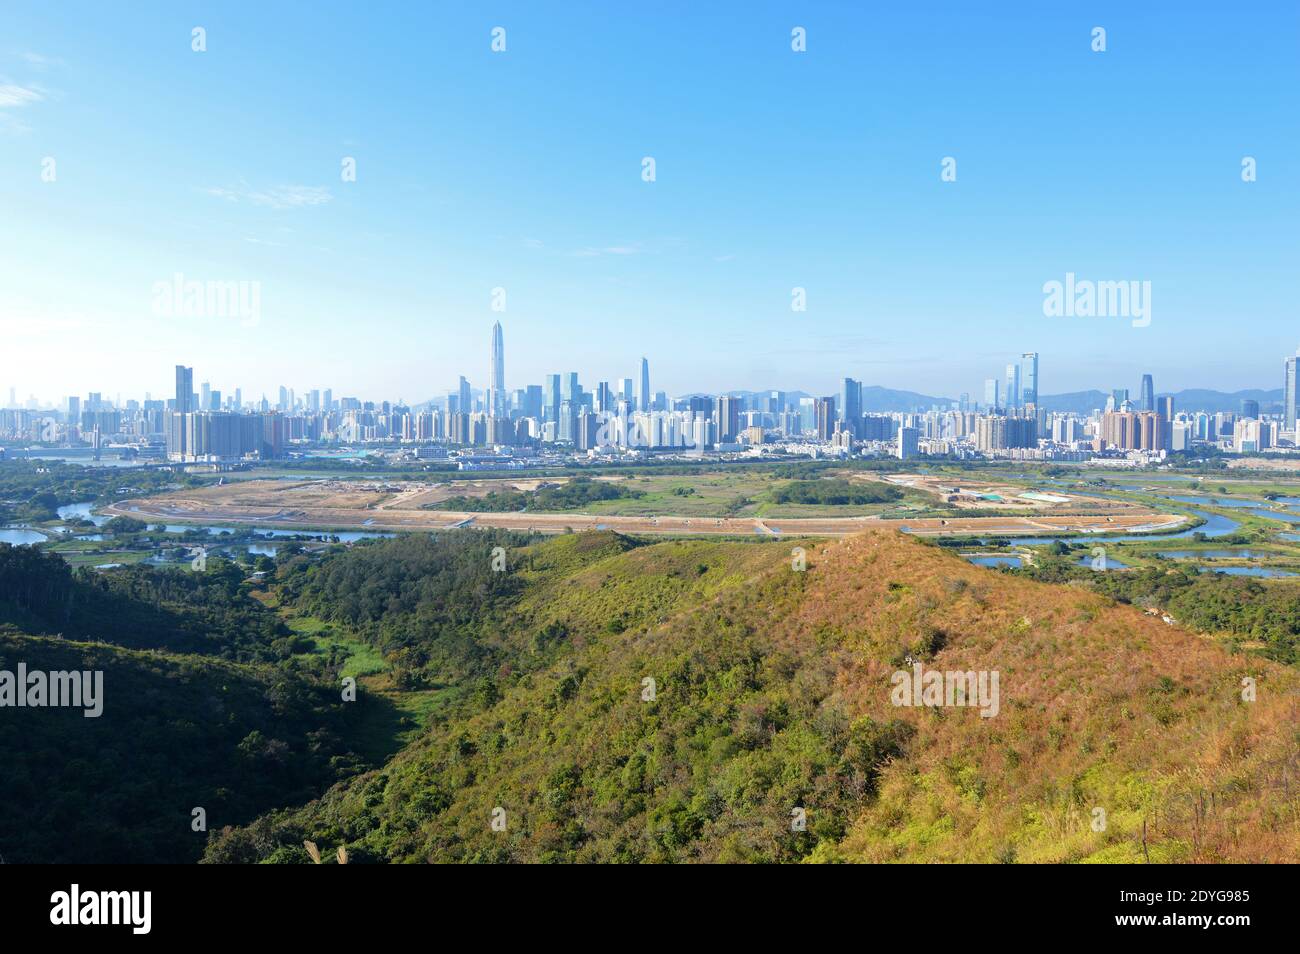 Die Bauarbeiten am Lok Ma Chau Loop für den Hong Kong-Shenzhen Innovation and Technology Park (Dezember 2020) mit der Skyline von Shenzhen, China, sind im Gange Stockfoto